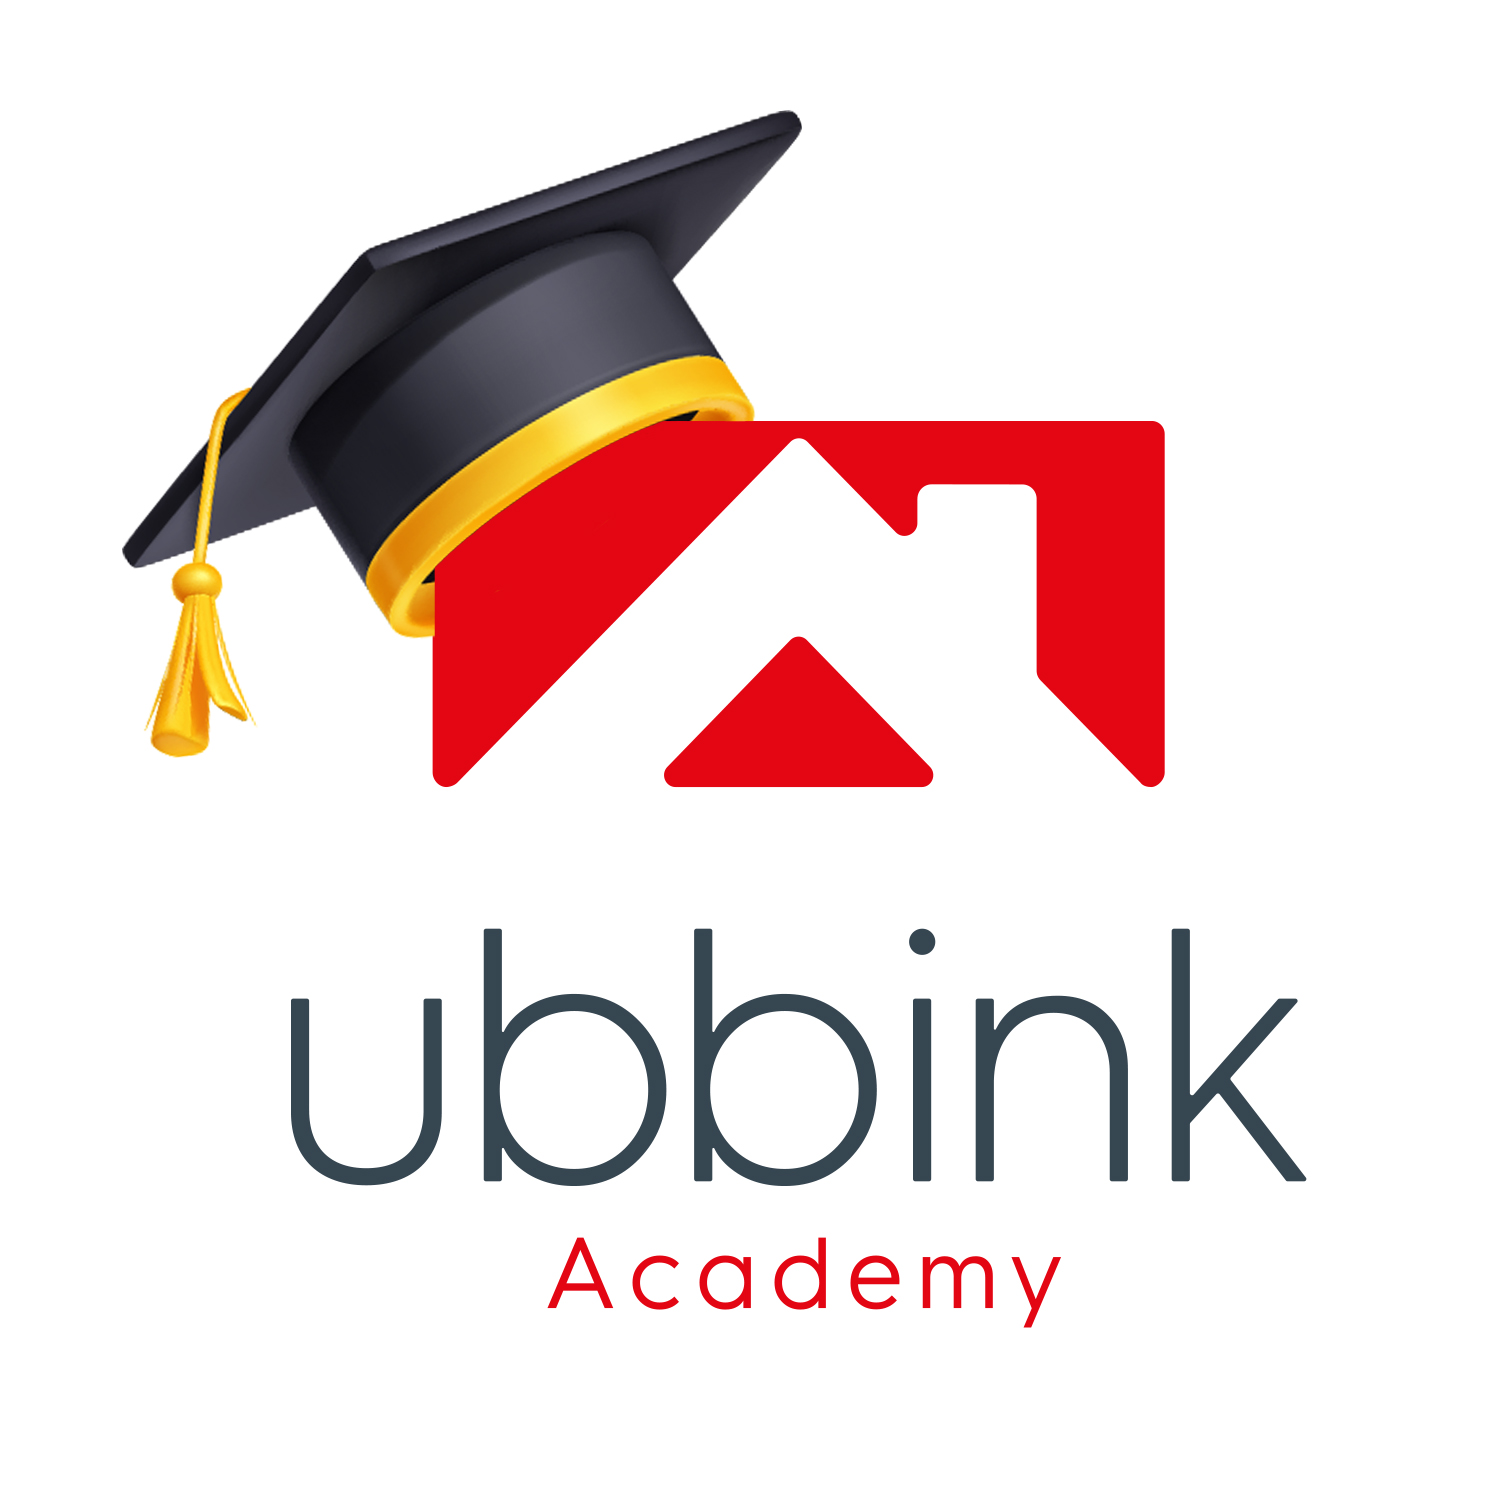 Ubbink Academy